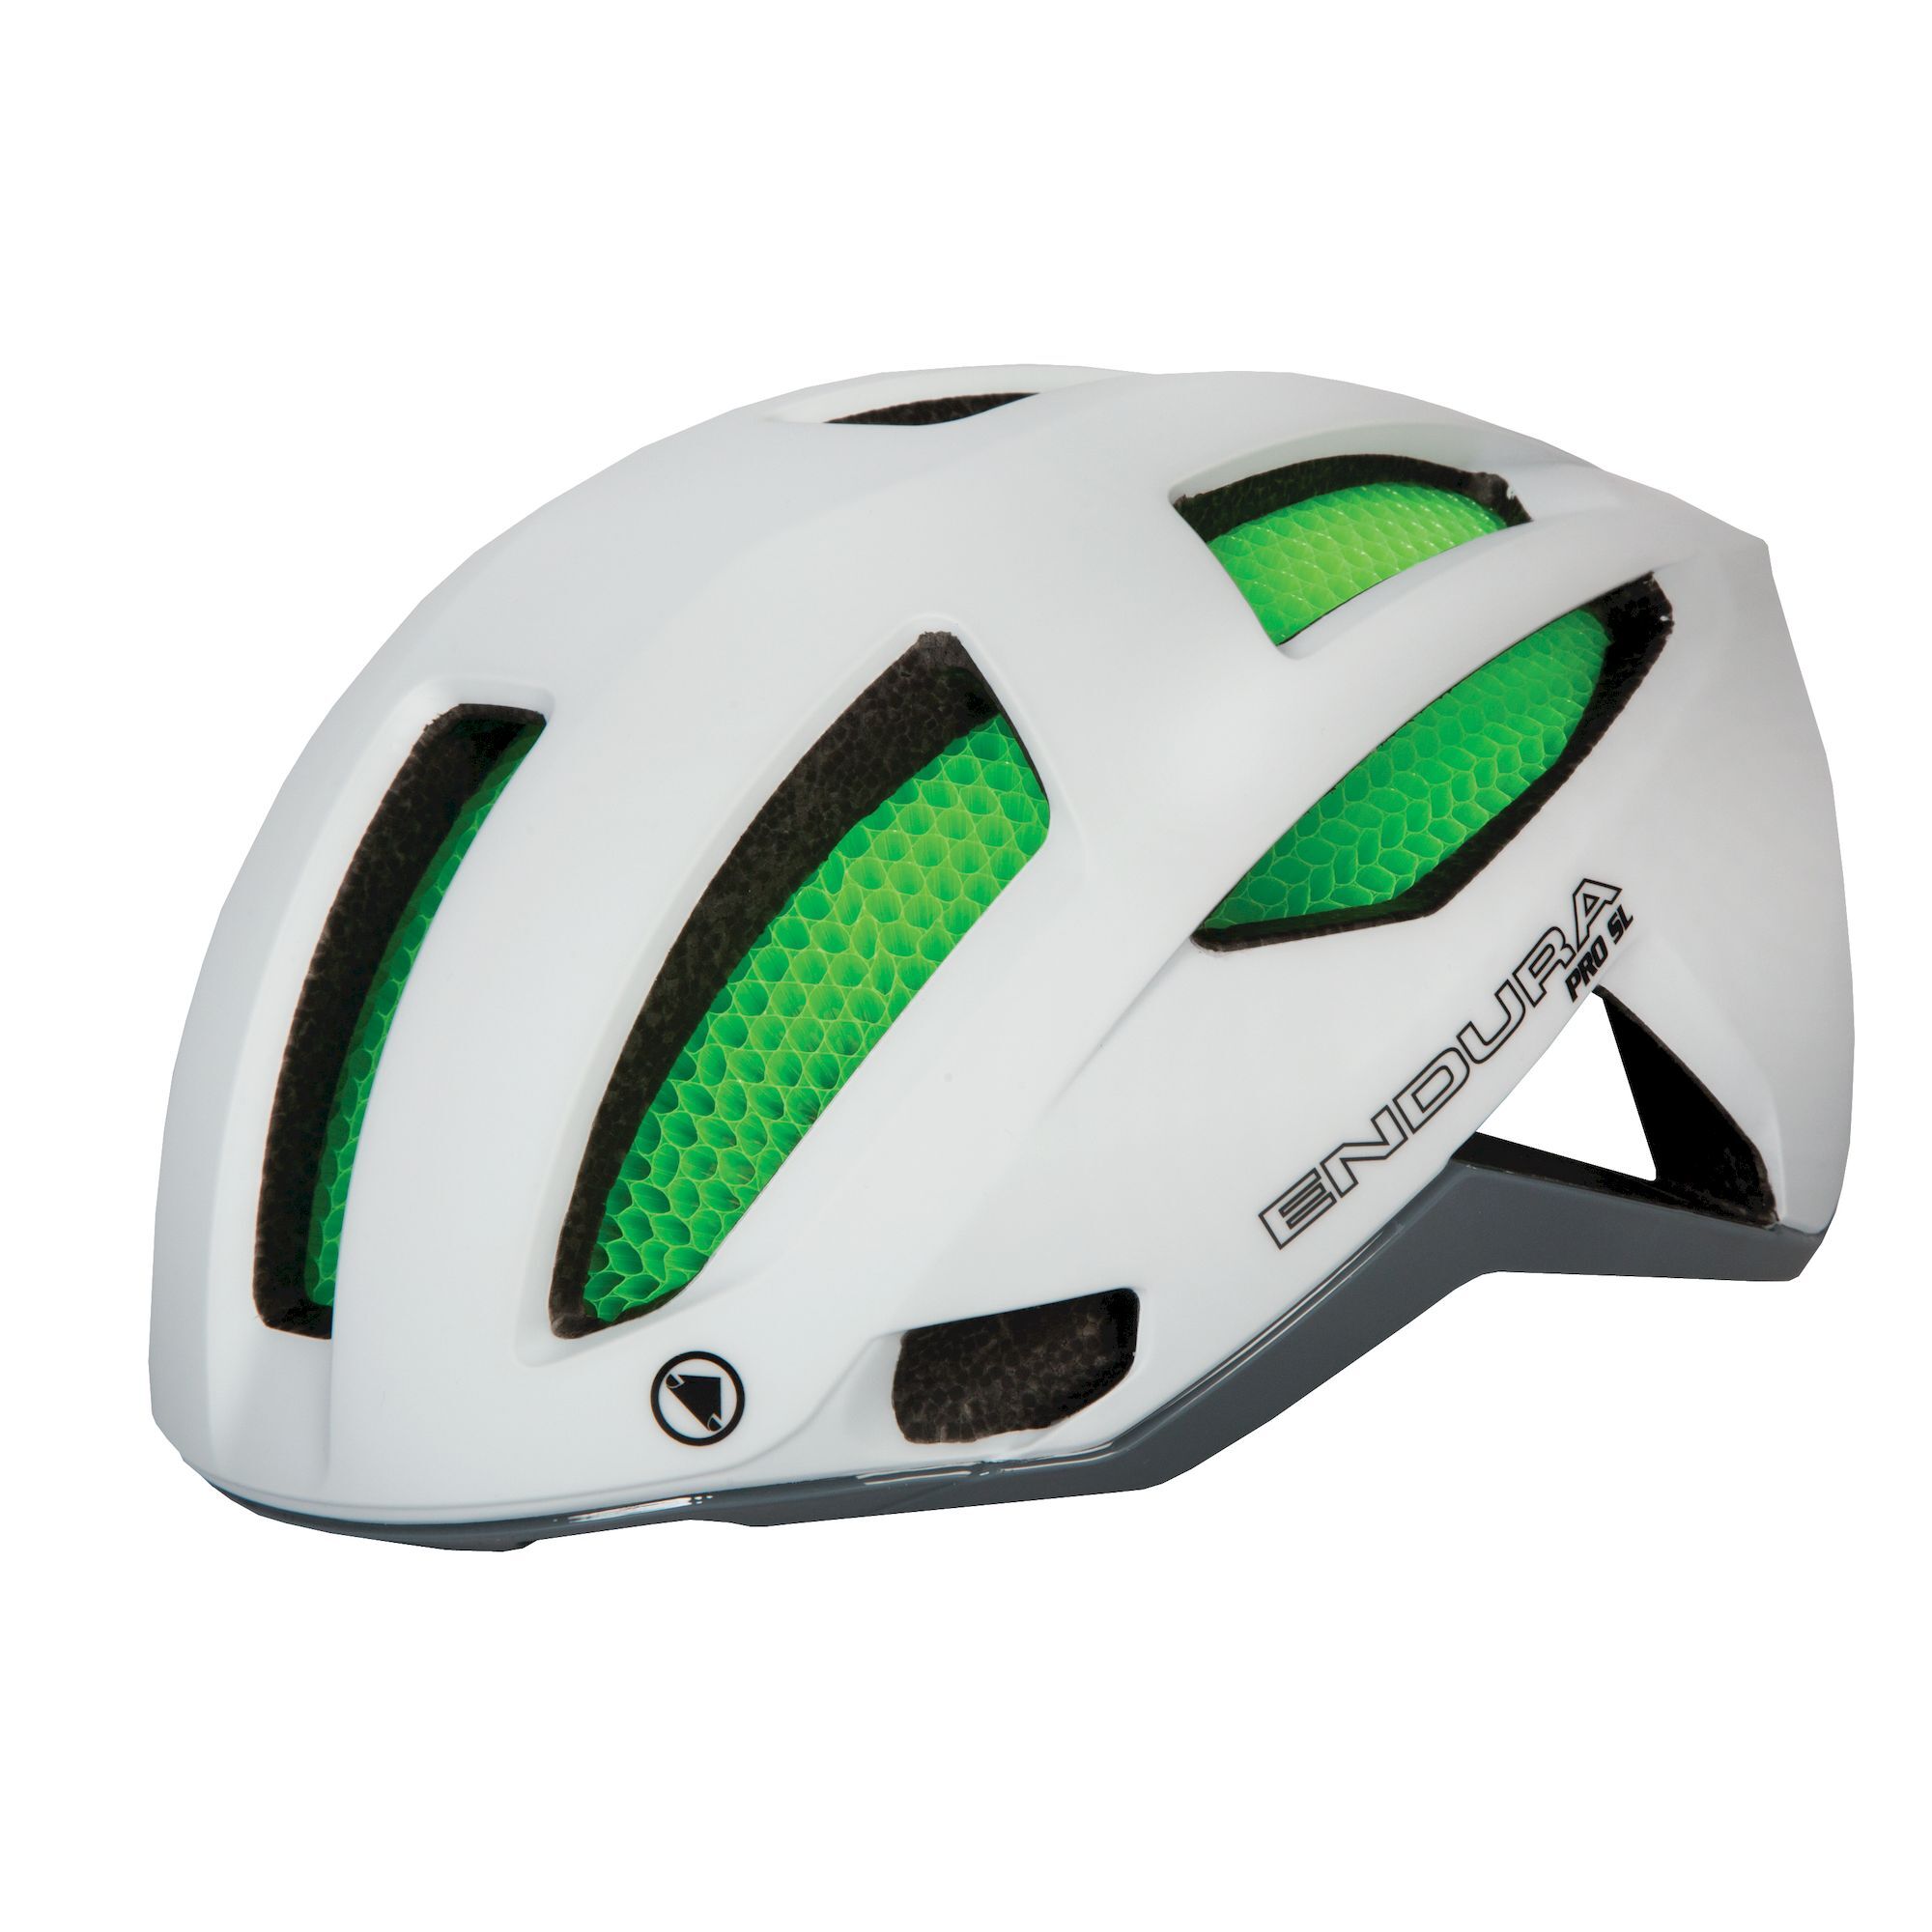 ENDURA Pro SL Helmet - Casco ciclismo carretera - Hombre